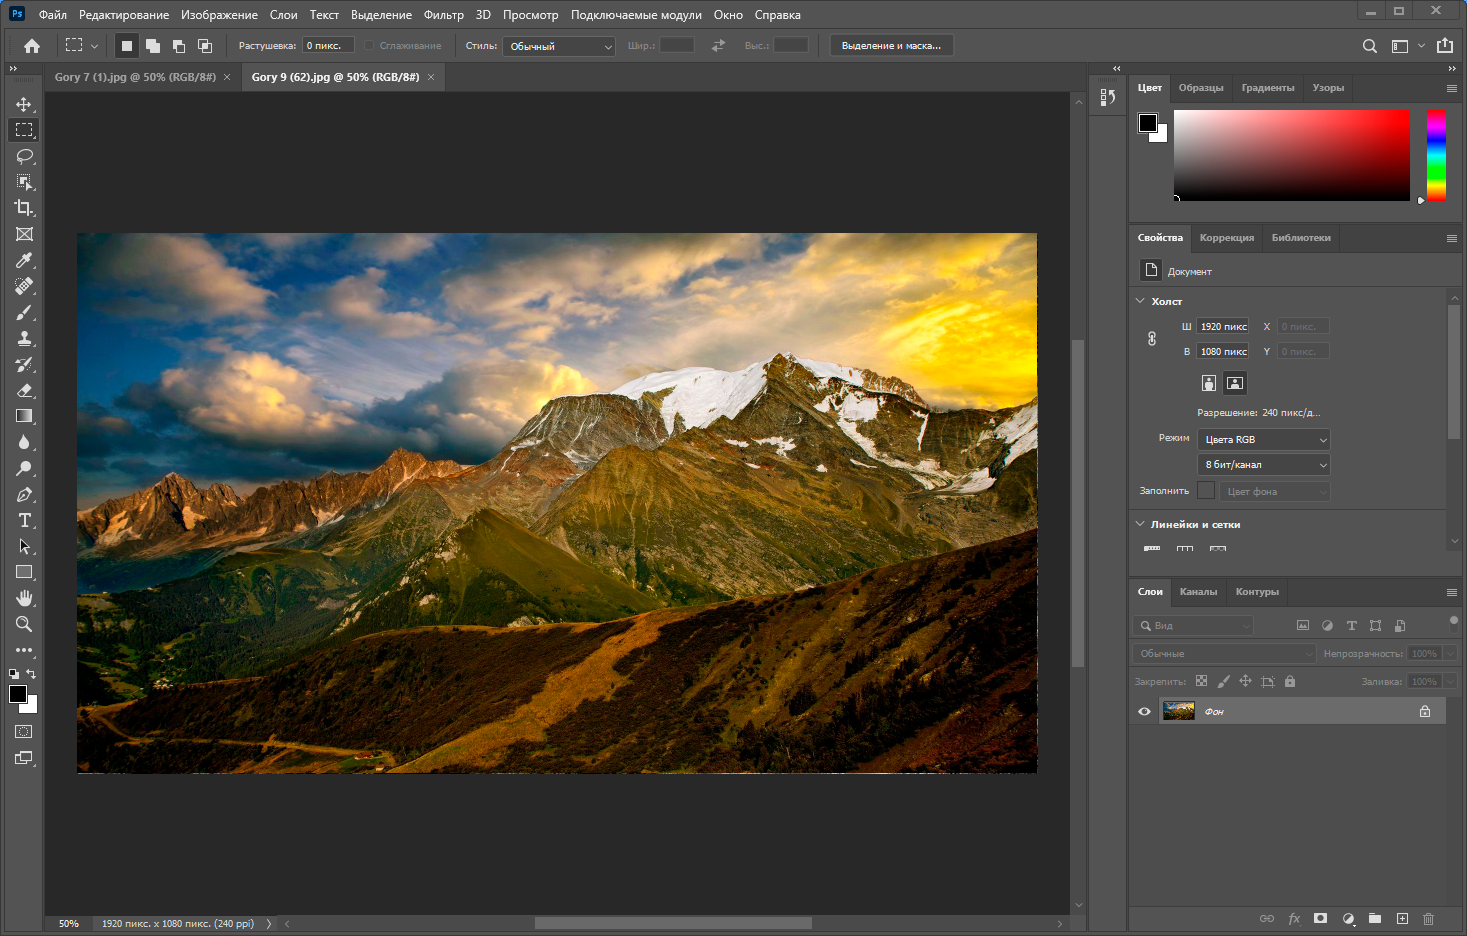 Adobe Photoshop 2021 22.5.5.691 RePack by KpoJIuK [Multi/Ru]